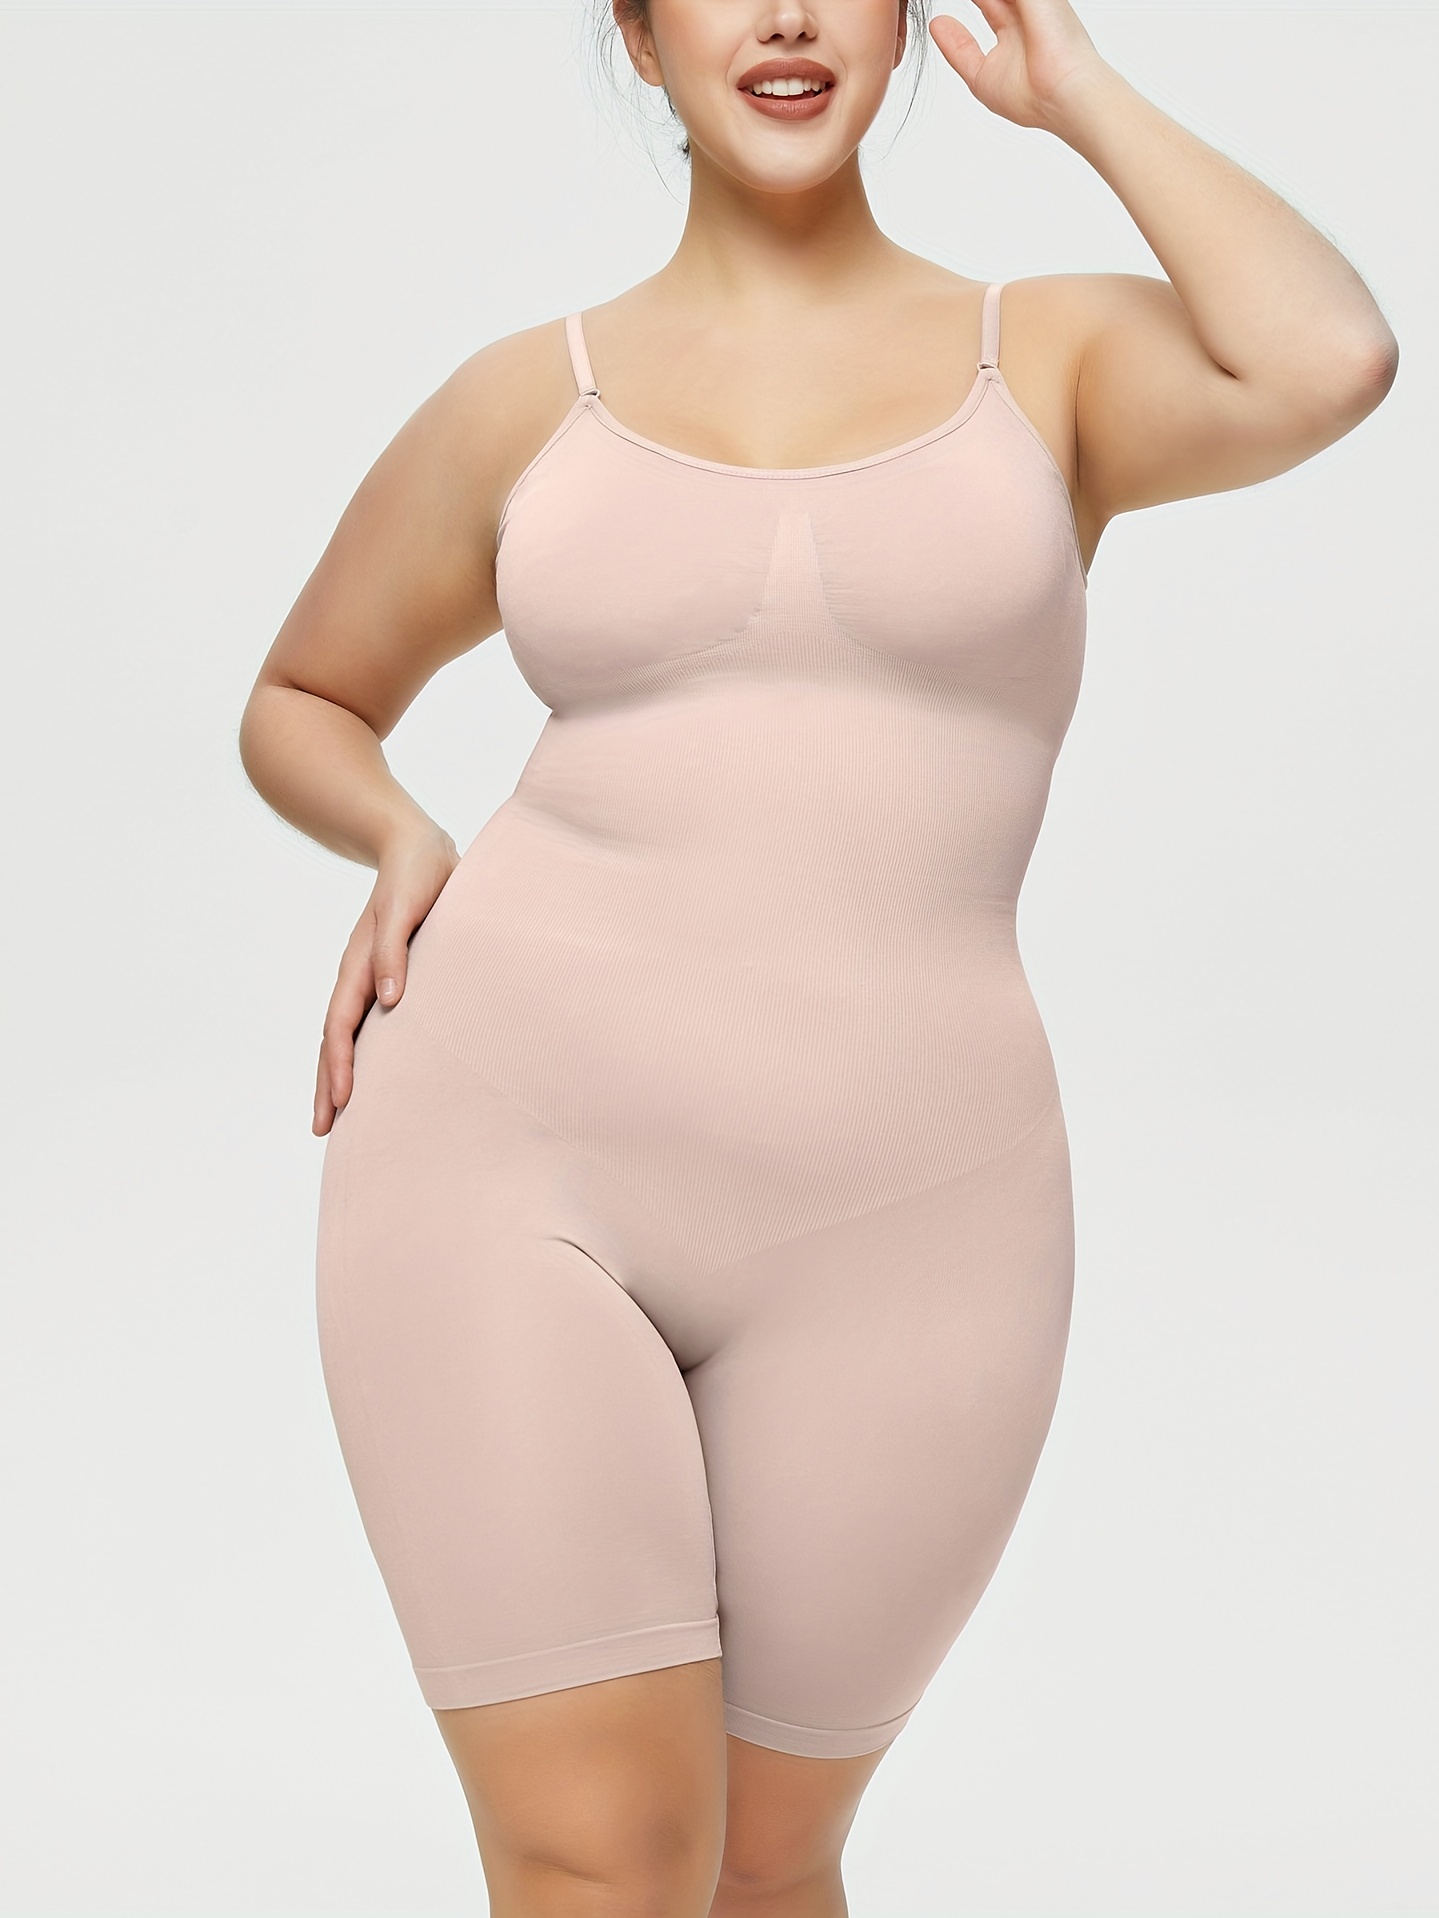 Plus Size Shapewear for Women Tummy Control Body Shaper Elastic